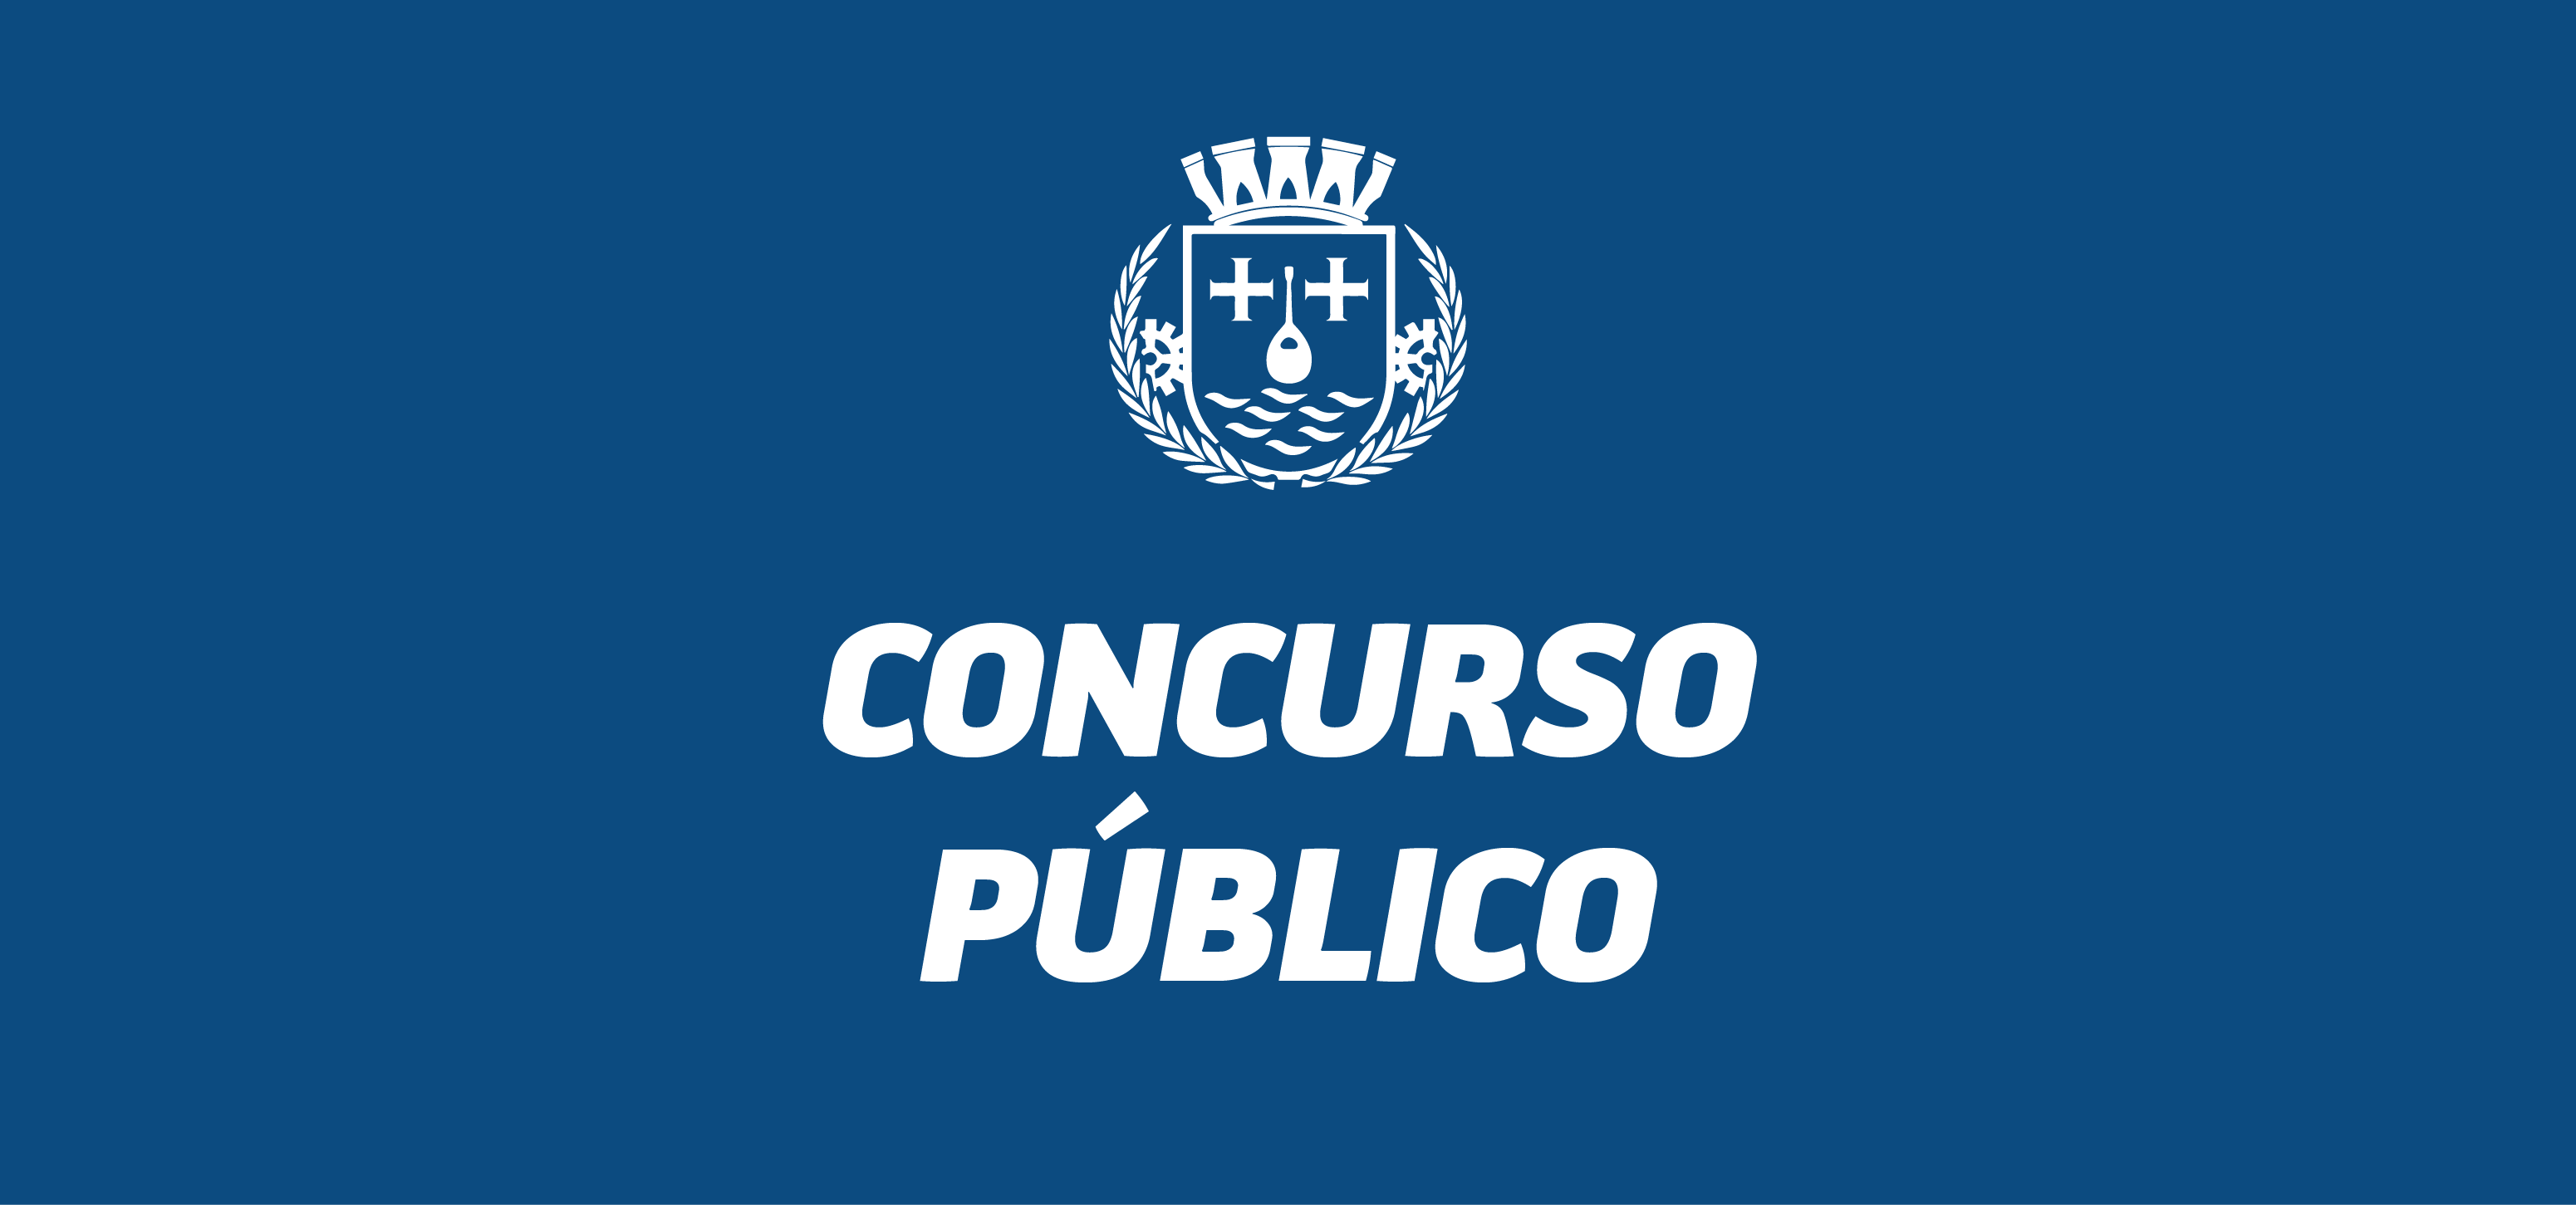 Concurso público: Prefeitura de São Gonçalo divulga edital com 547 vagas; Saae com 36 vagas